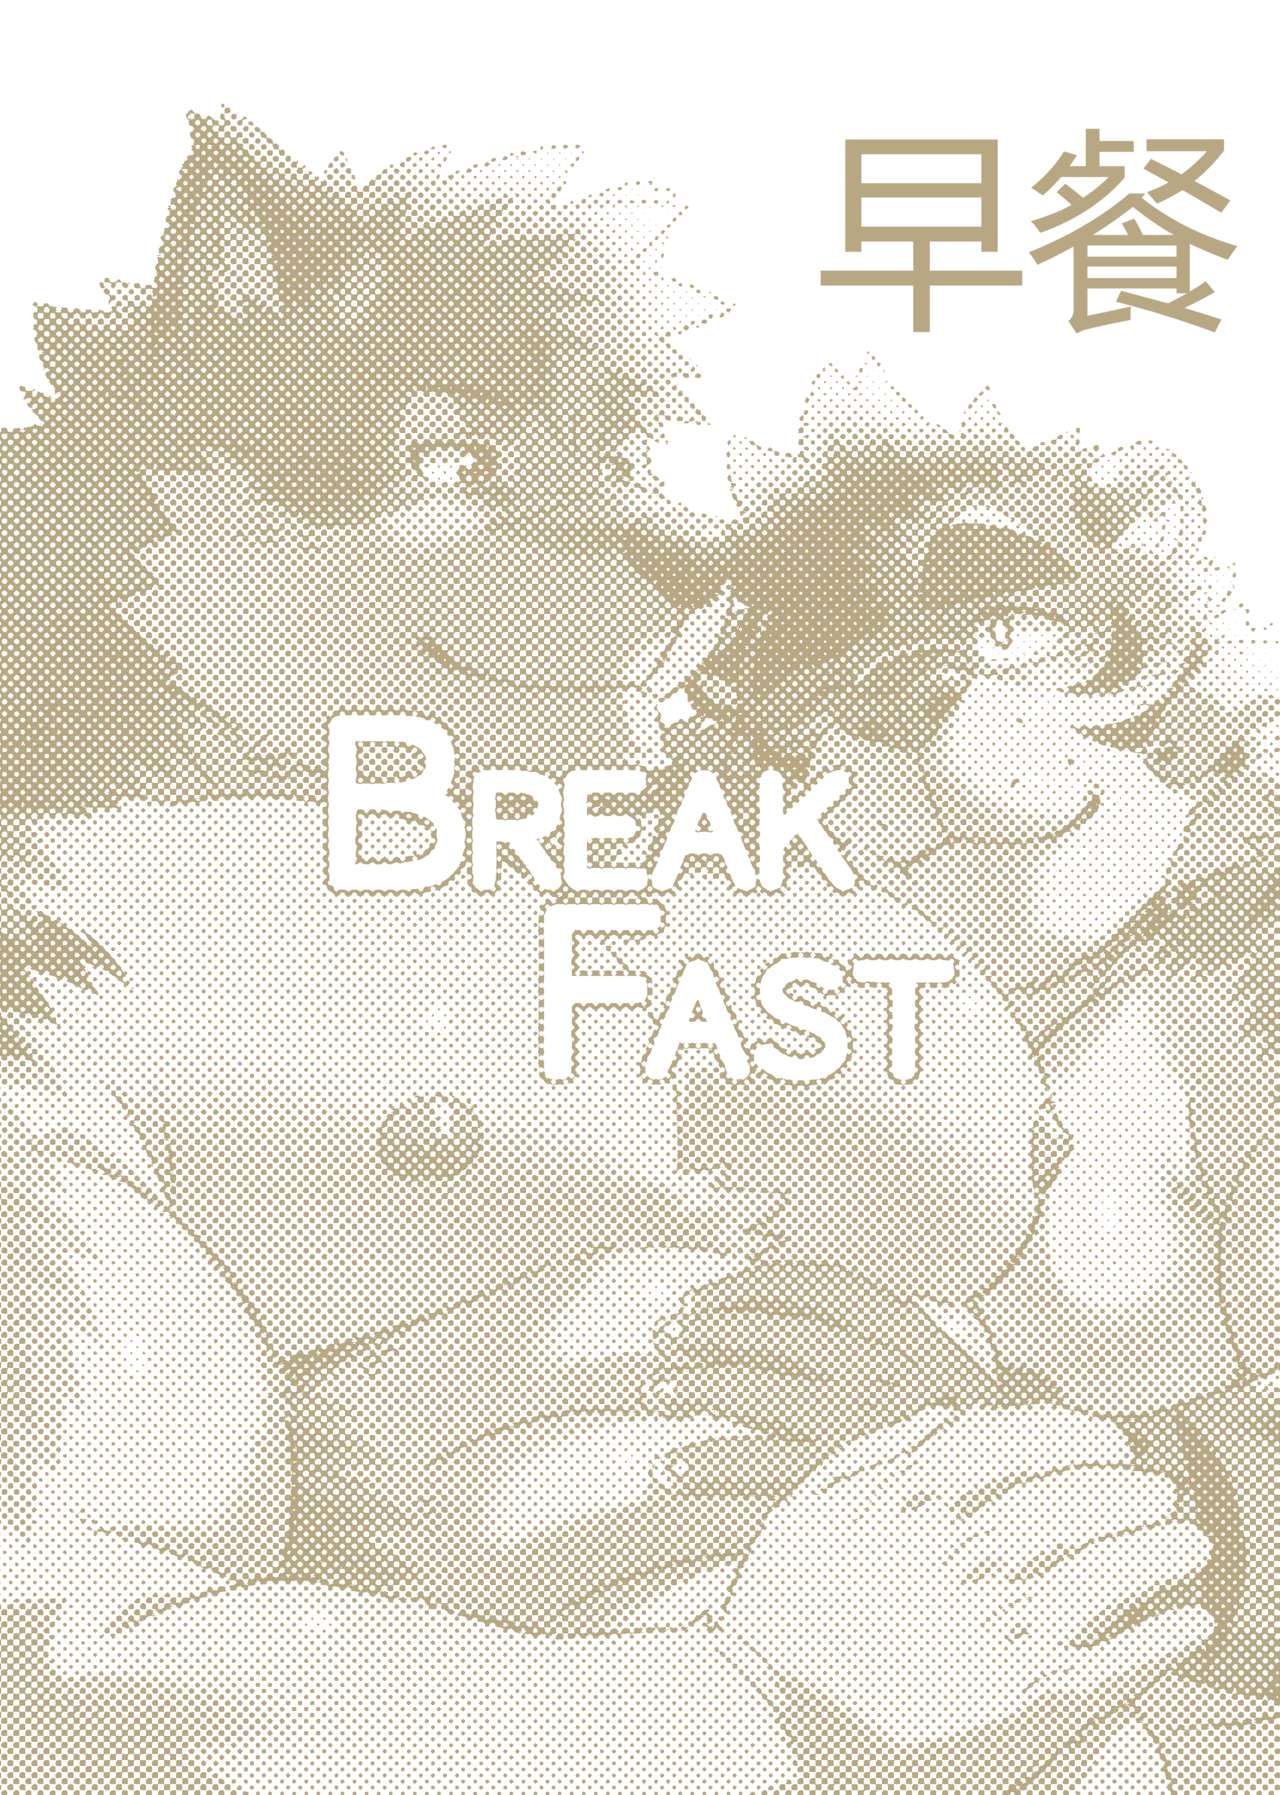 [WILD STYLE(Ross)] Breakfast 早餐 汉化 [ローストビーフ (ロス)] BREAKFAST [中国翻訳] [DL版]